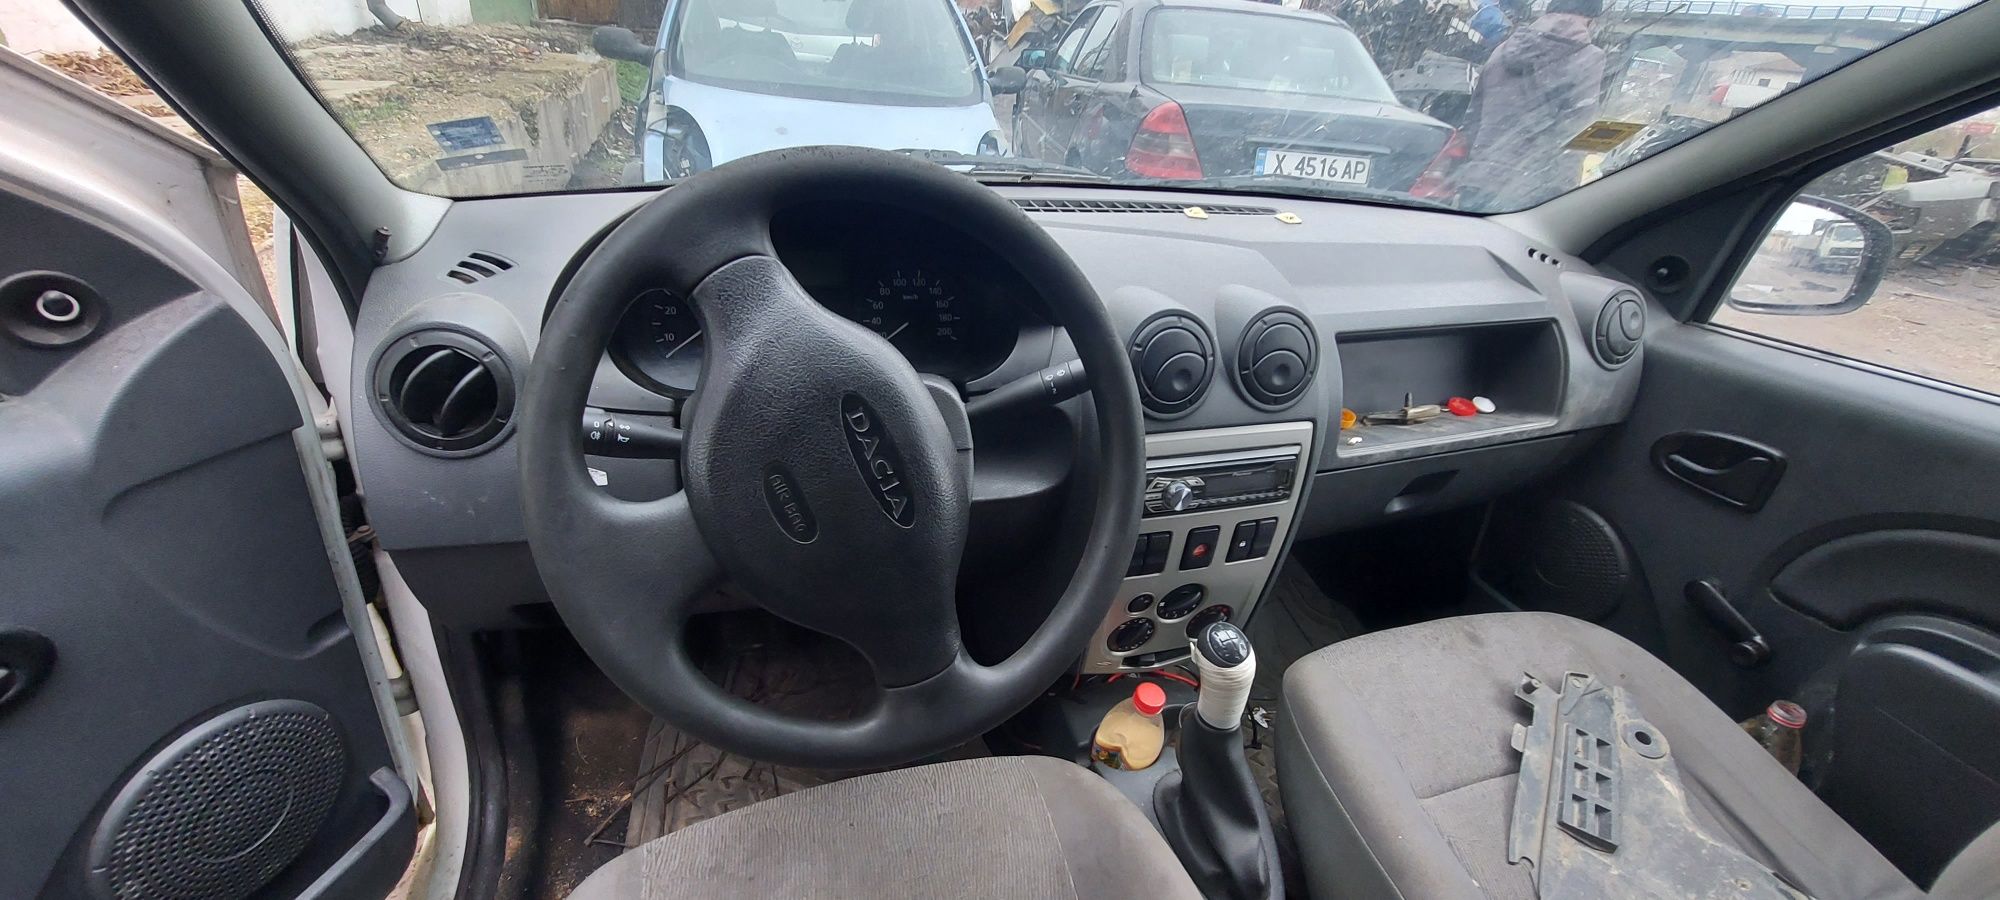 Dacia logan 2008 1.5d